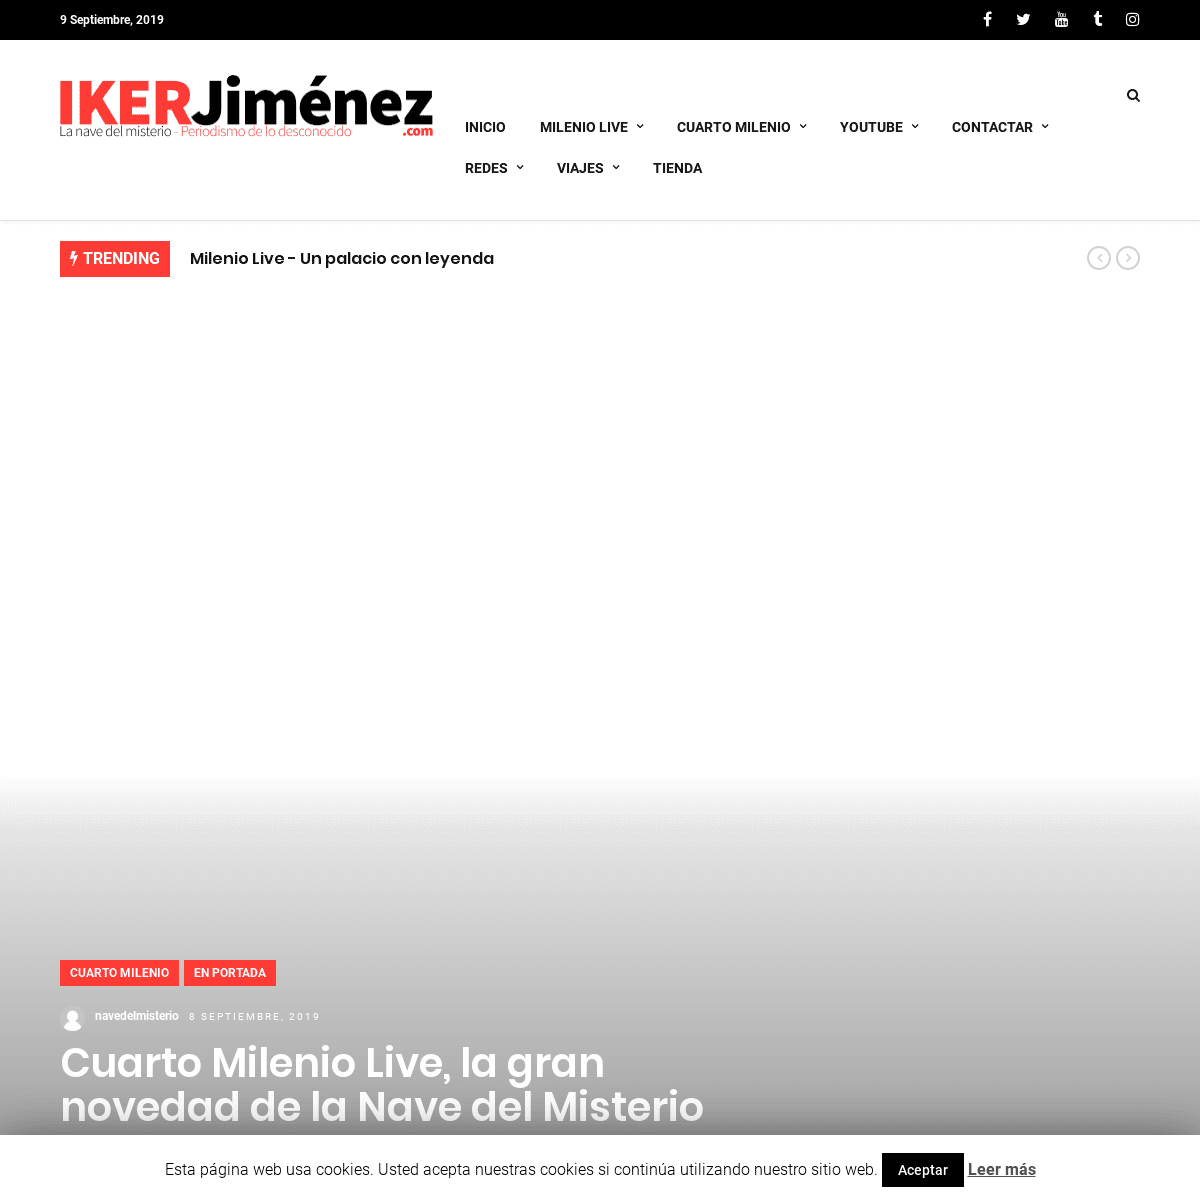 ikerjimenez.com – Periodismo de lo desconocido